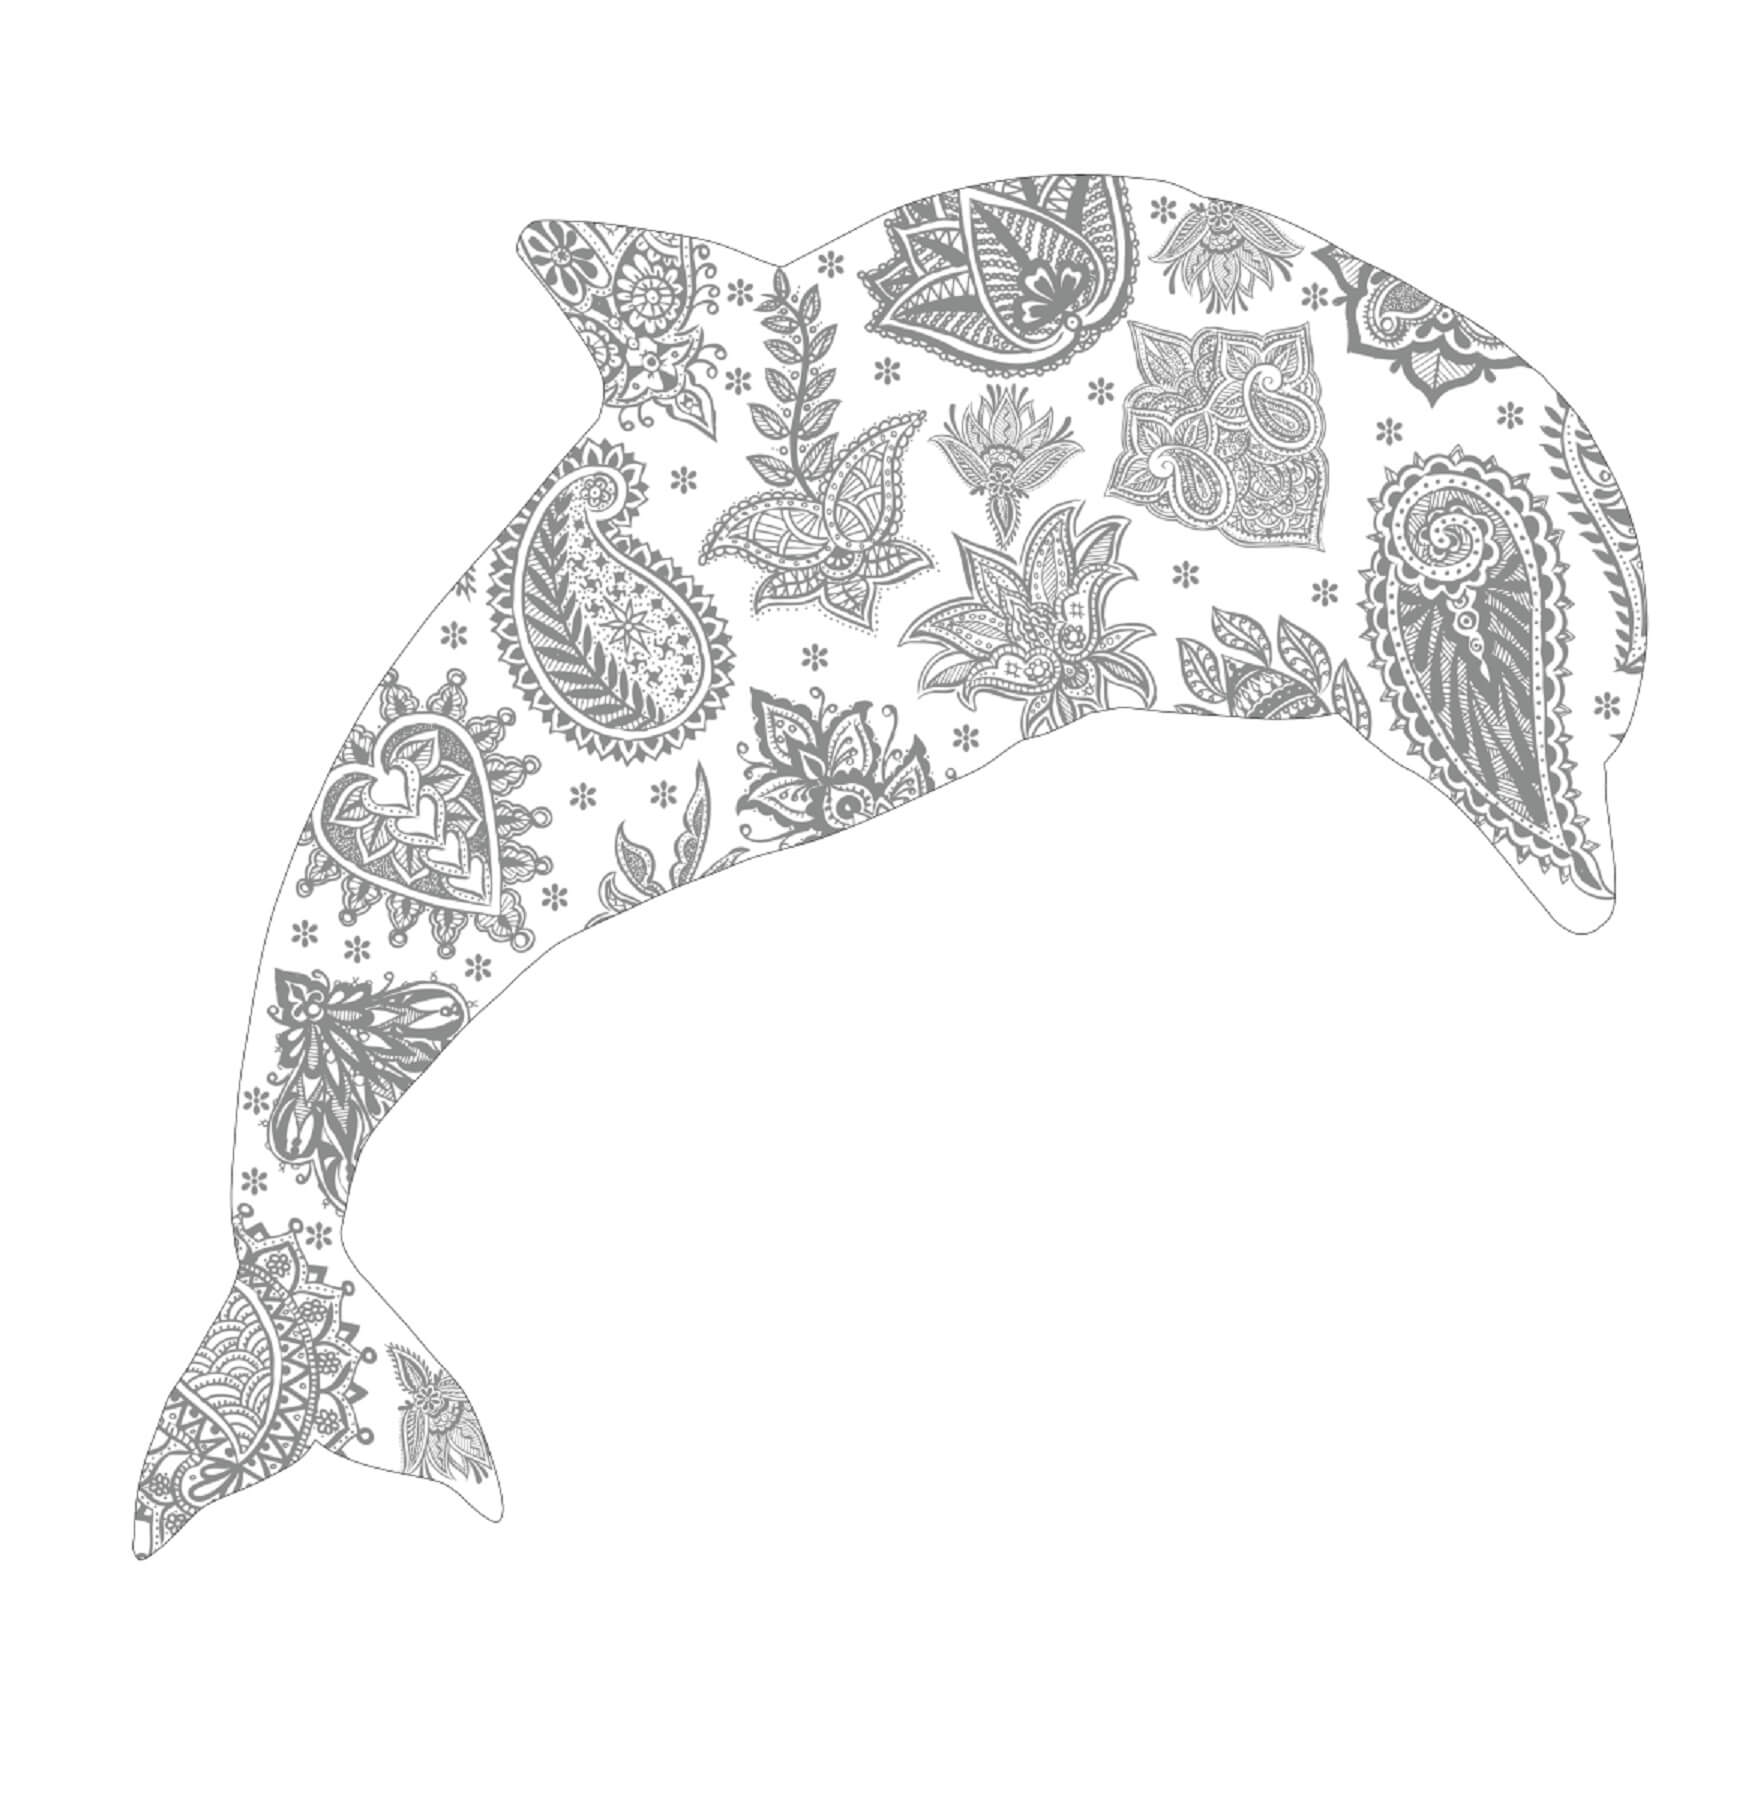 Mandala Dolphin Coloring Page - Sheet 6 Mandalas